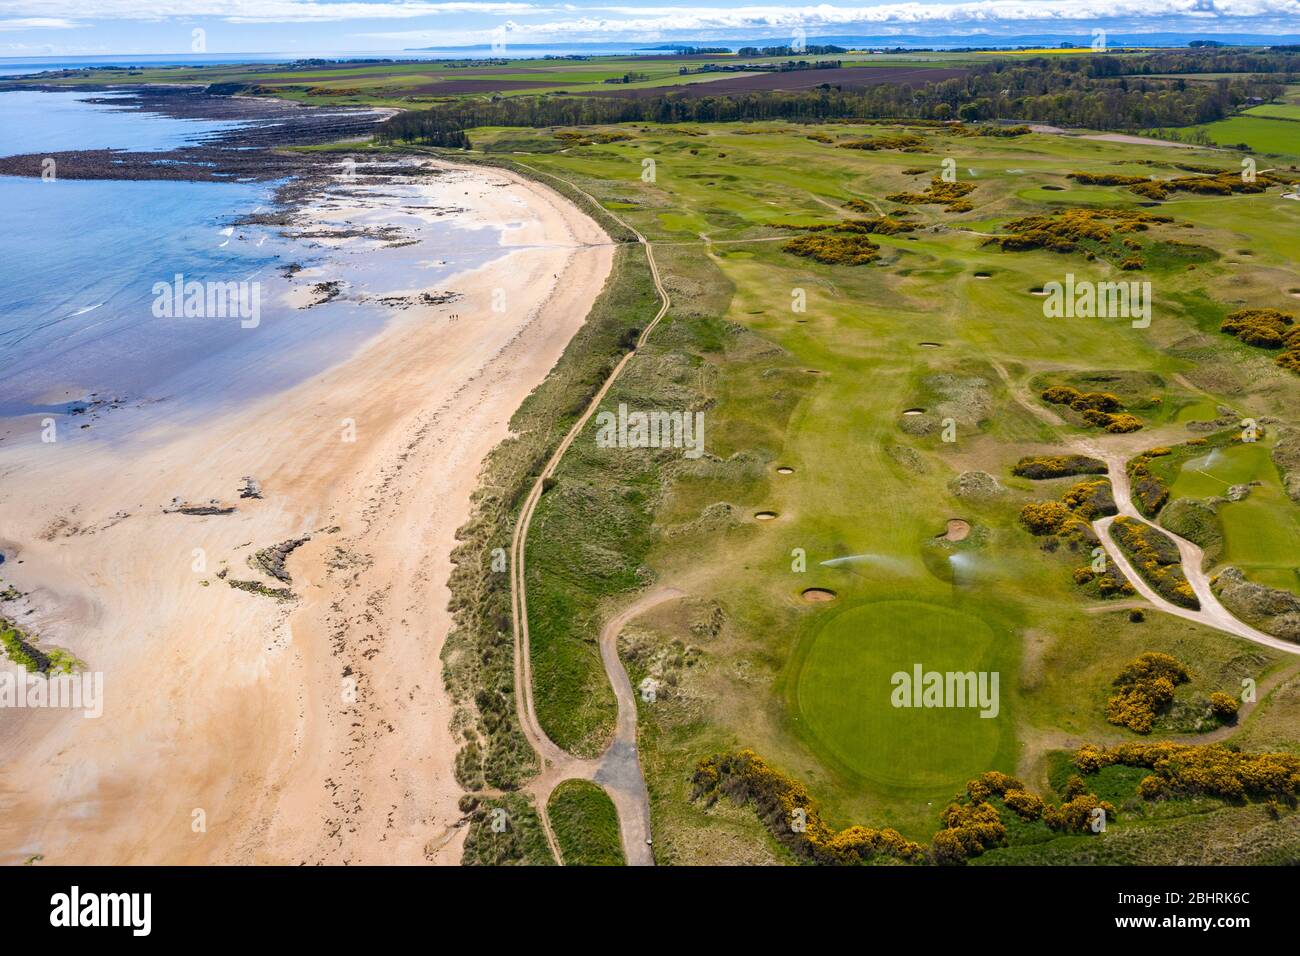 Luftaufnahme des Golfplatzes Kingsbarns Golf Links in Fife, Schottland, Großbritannien Stockfoto